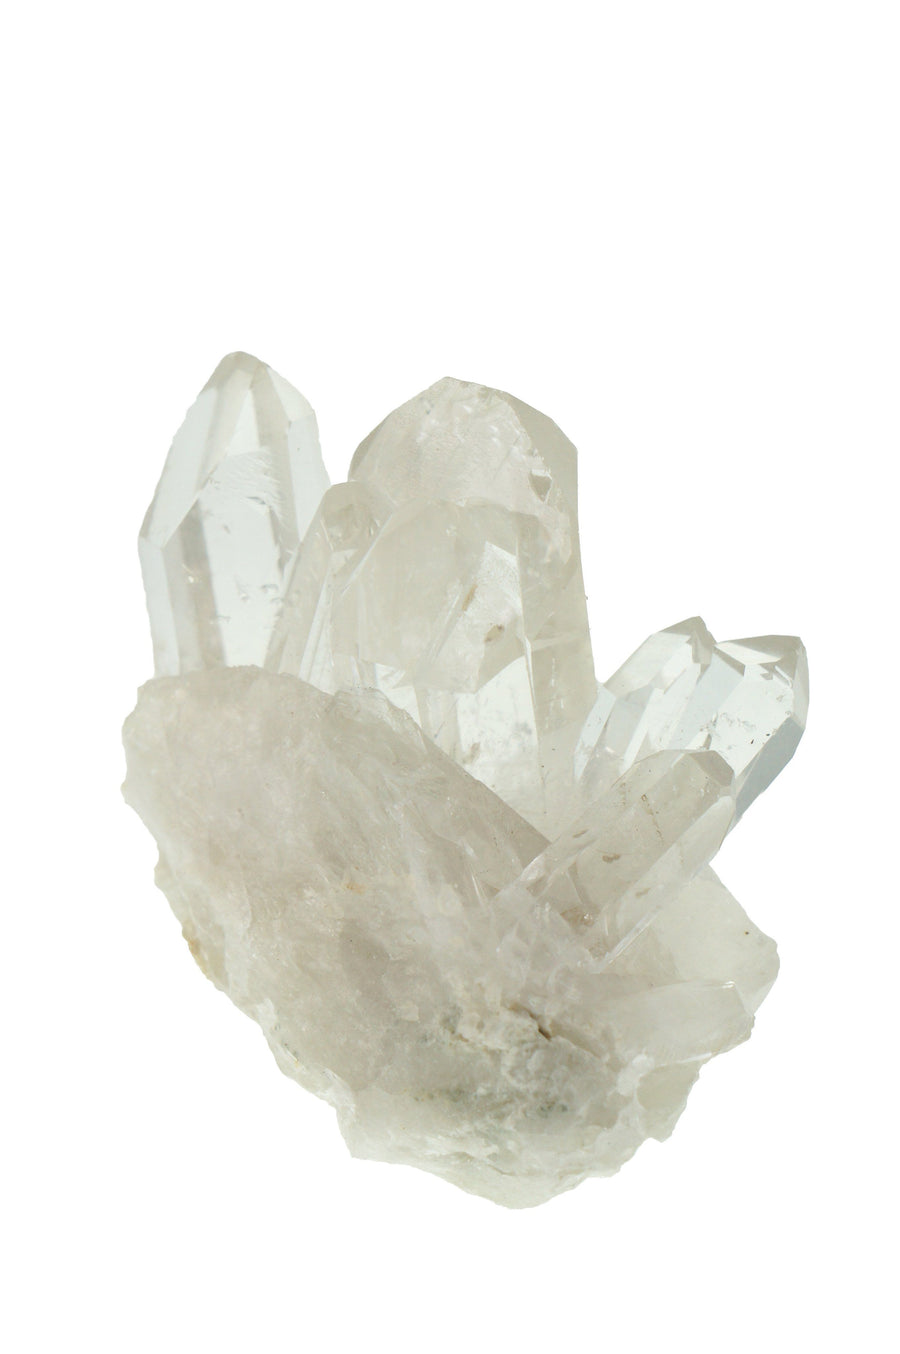 Raw Clear Quartz Point Cluster Quartz Crystals 